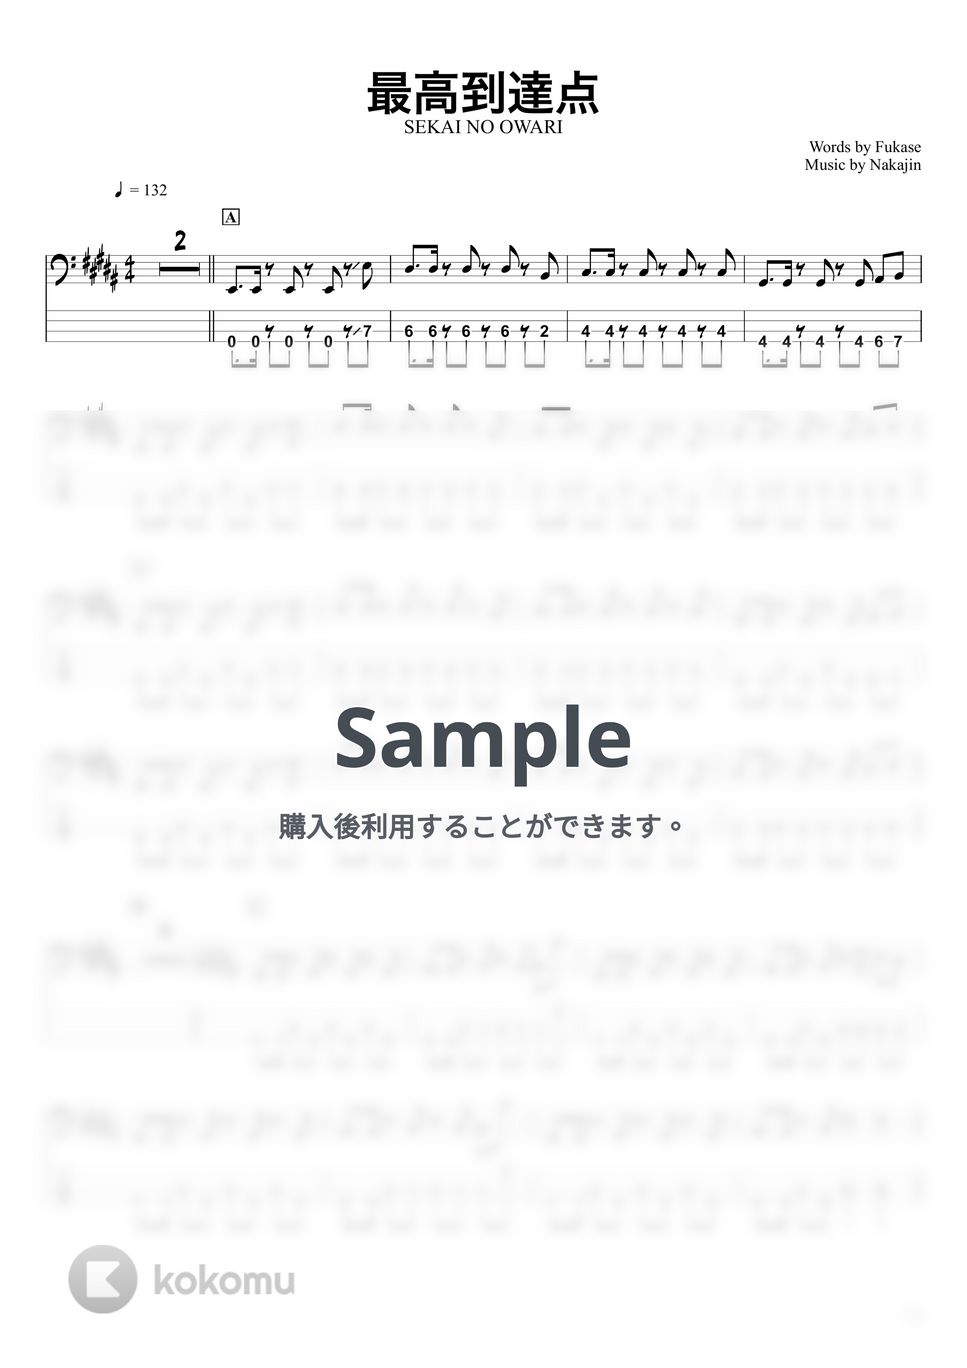 SEKAI NO OWARI - 最高到達点 (ベースTAB譜☆4弦ベース対応) by swbass